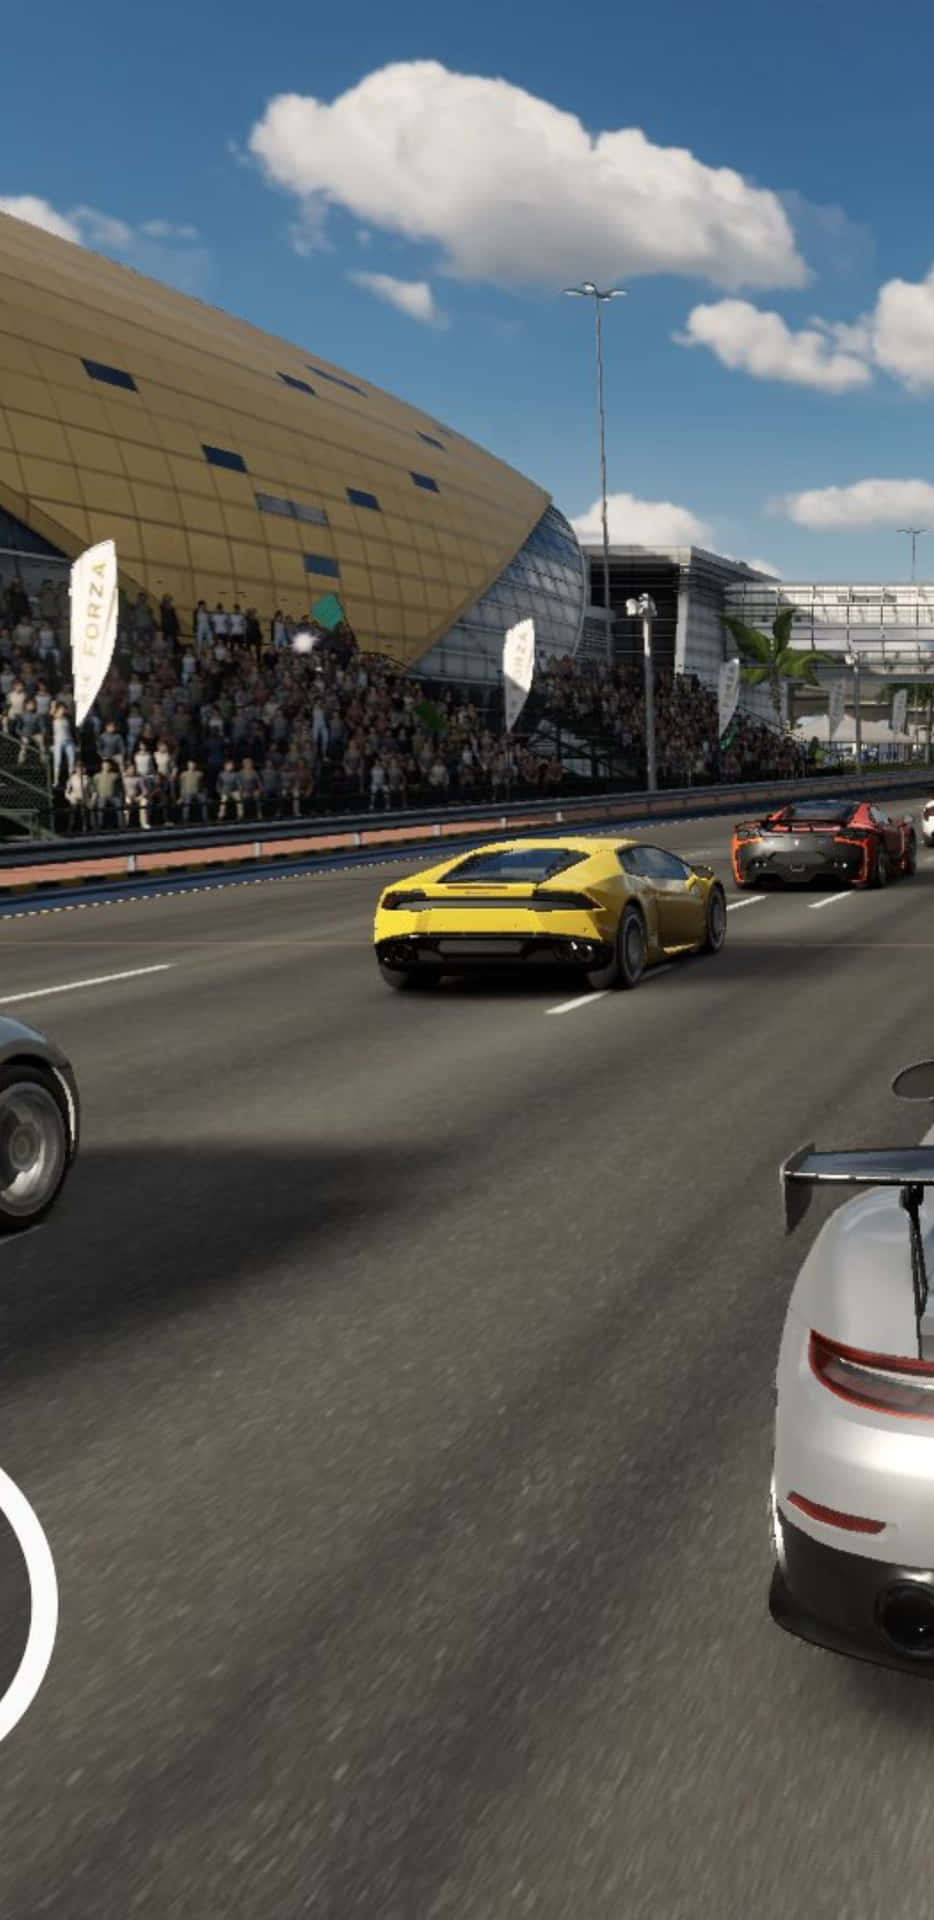 Pilotoprofesional De Carreras Detrás Del Volante De Un Pixel 3xl En El Juego Forza Motorsport 7.